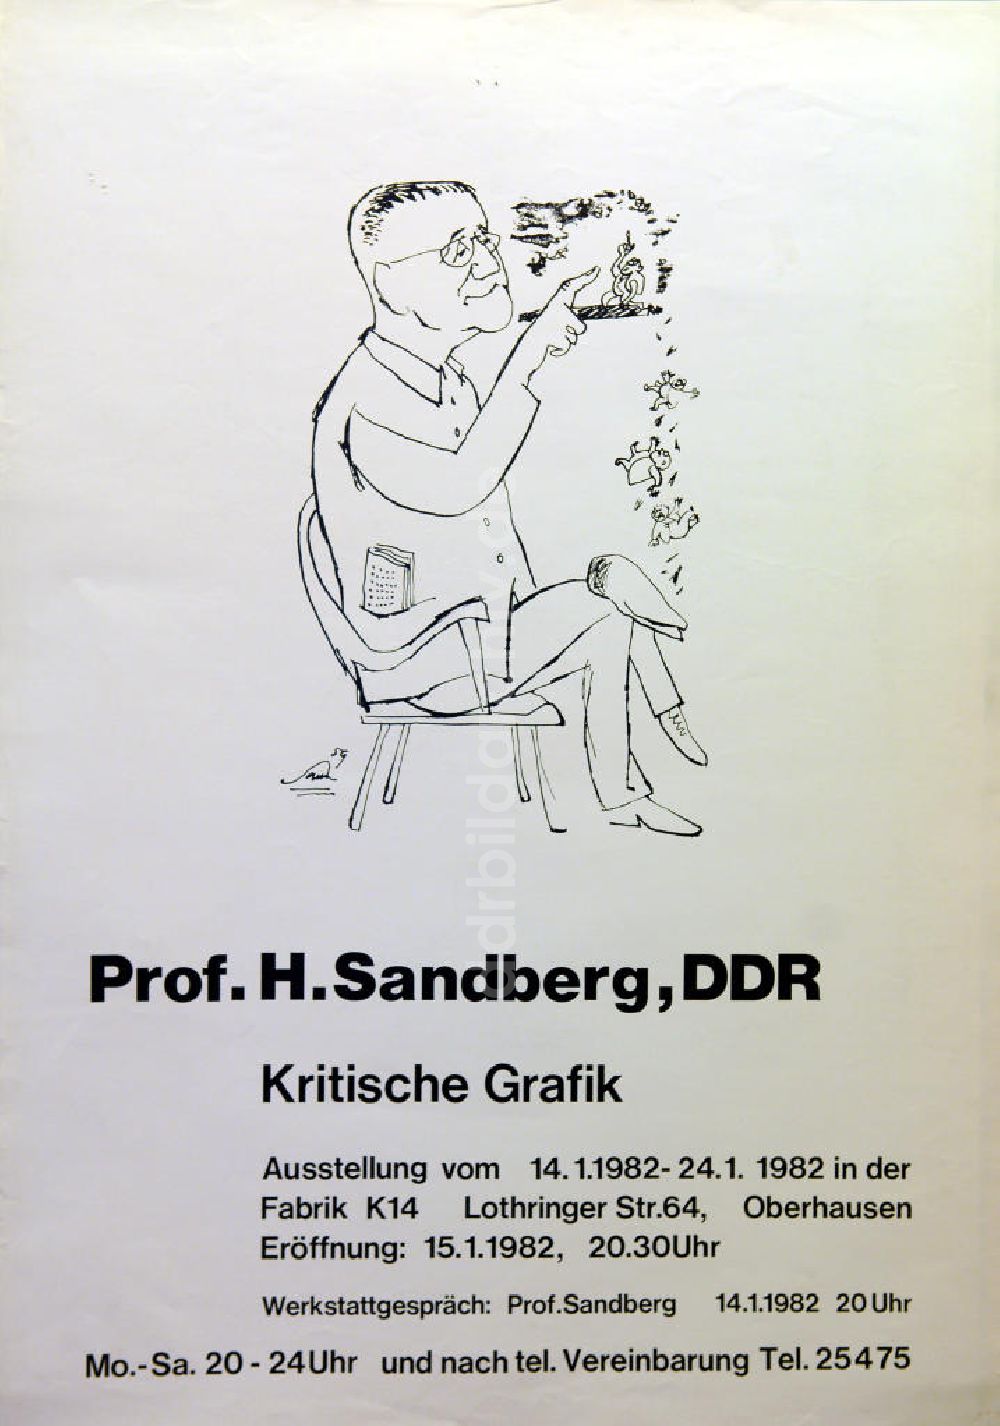 DDR-Bildarchiv: Berlin - Plakat von der Ausstellung Prof. H. Sandberg, DDR, kritische Grafik aus dem Jahr 1982